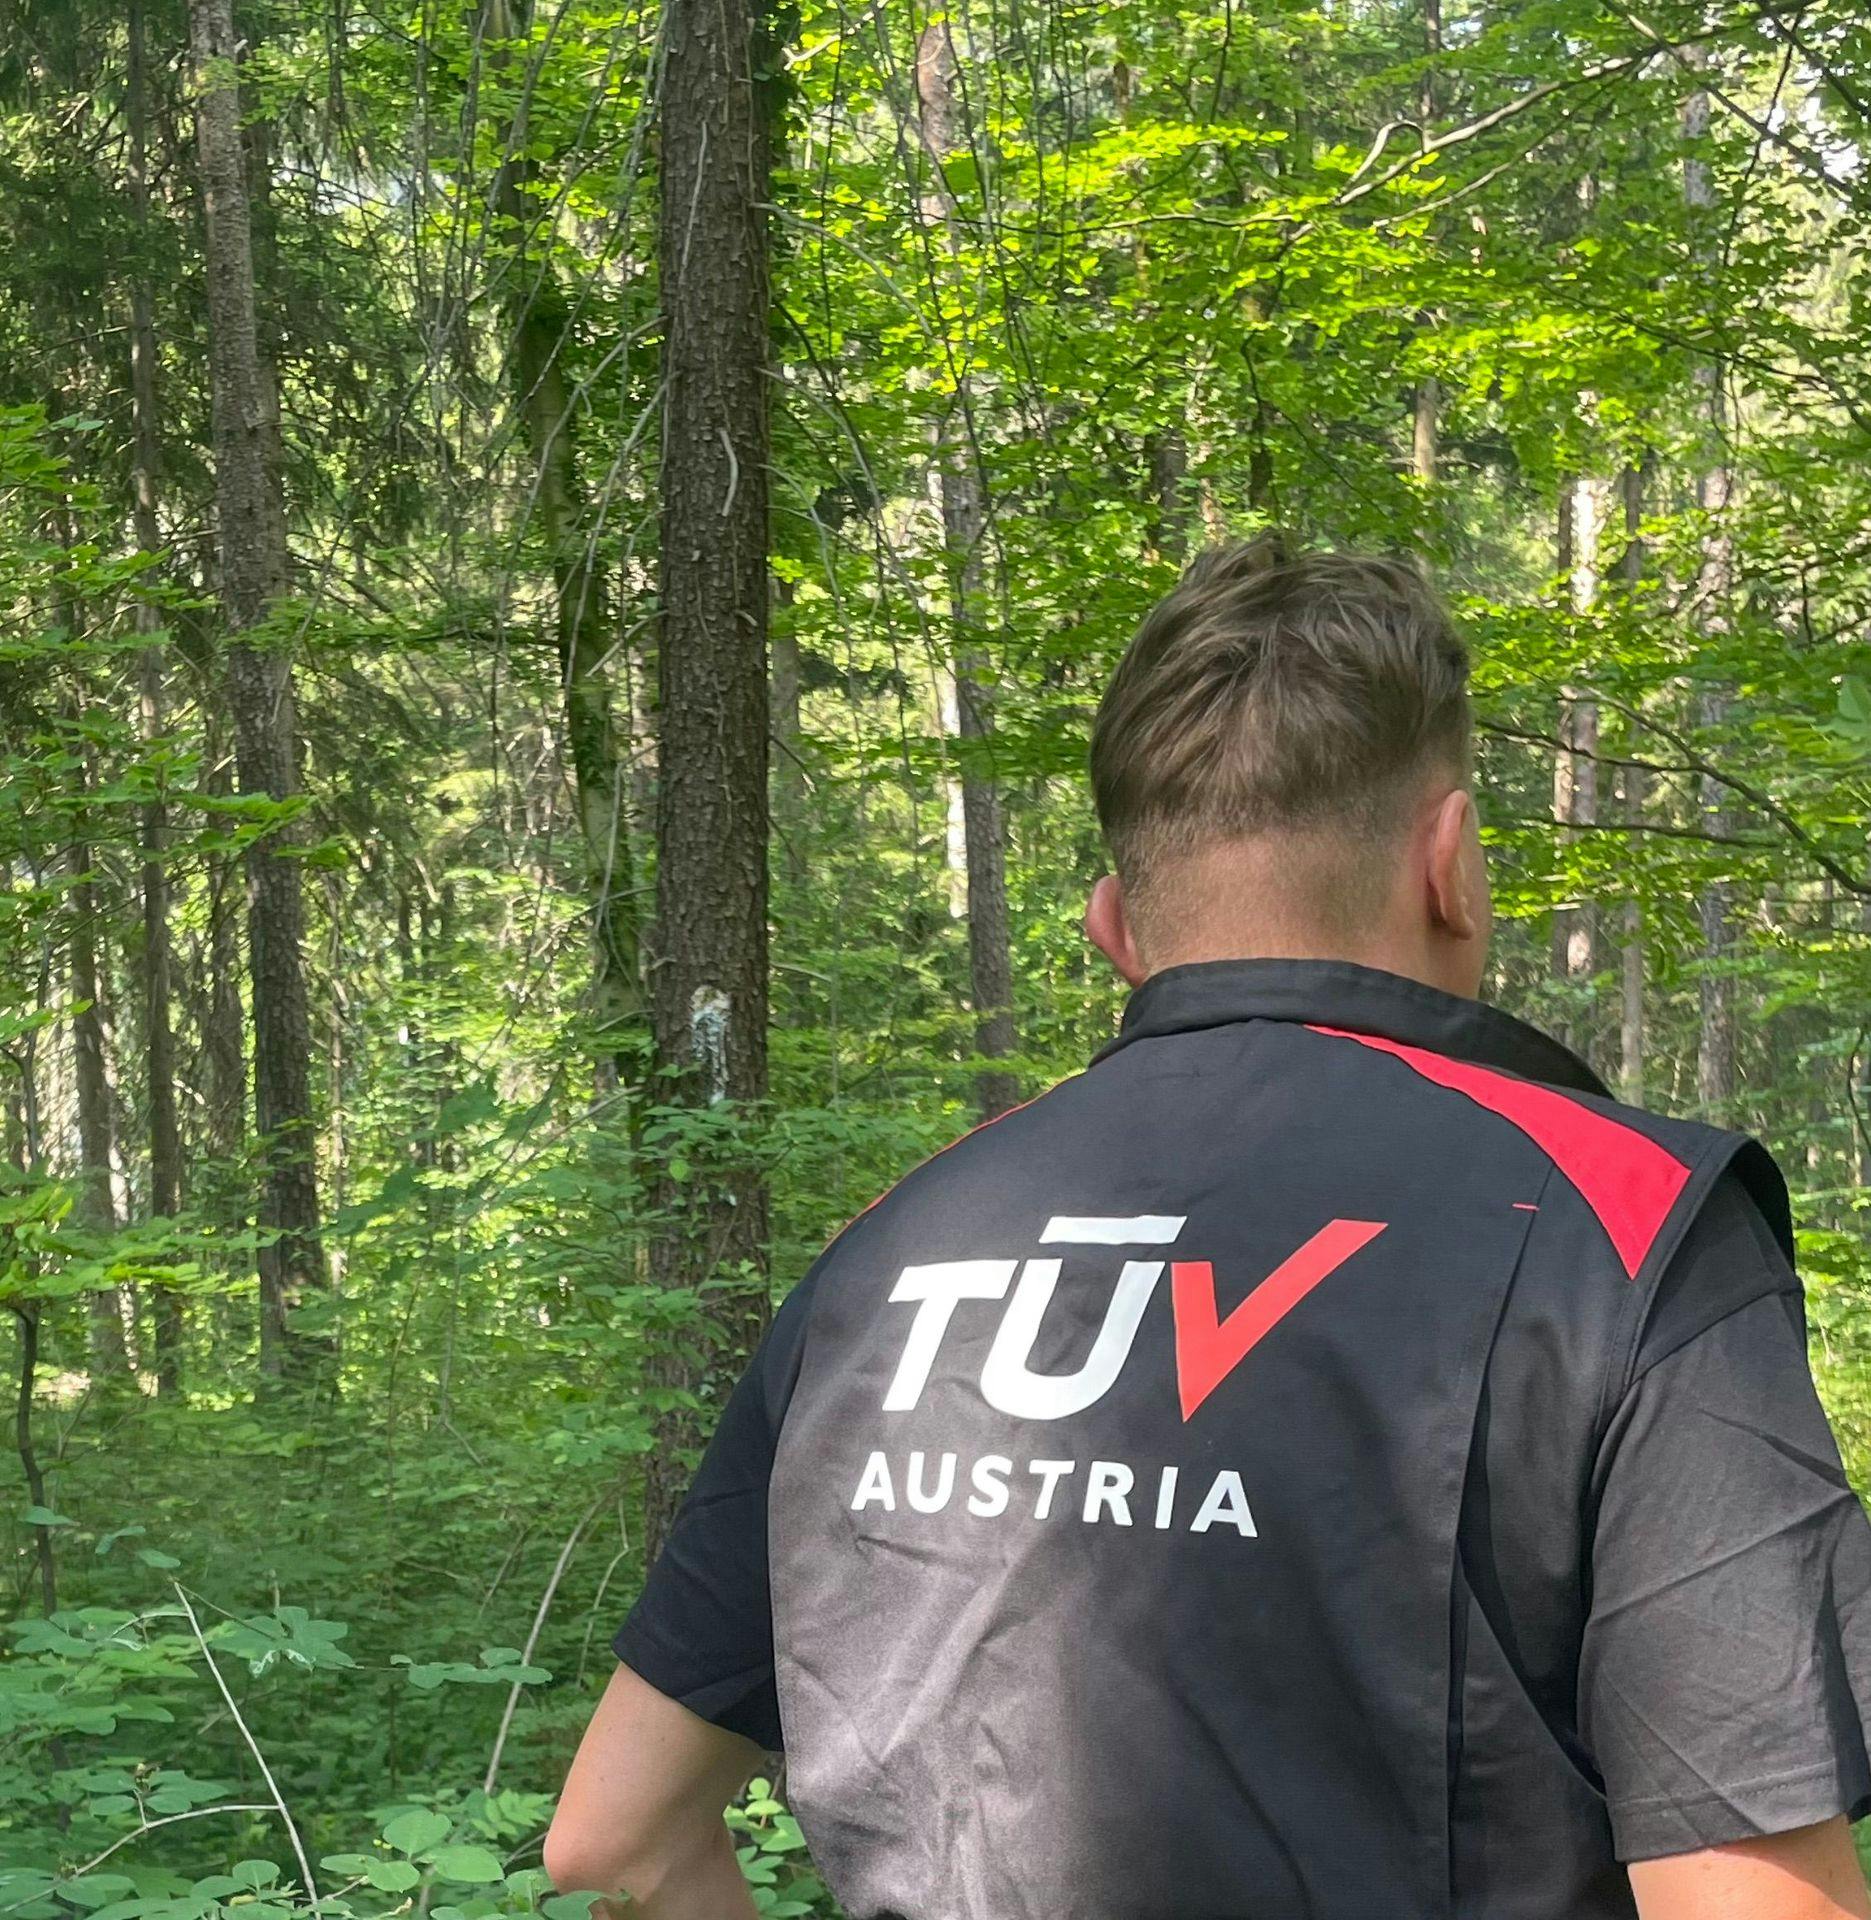 Auditor with TÜV vest